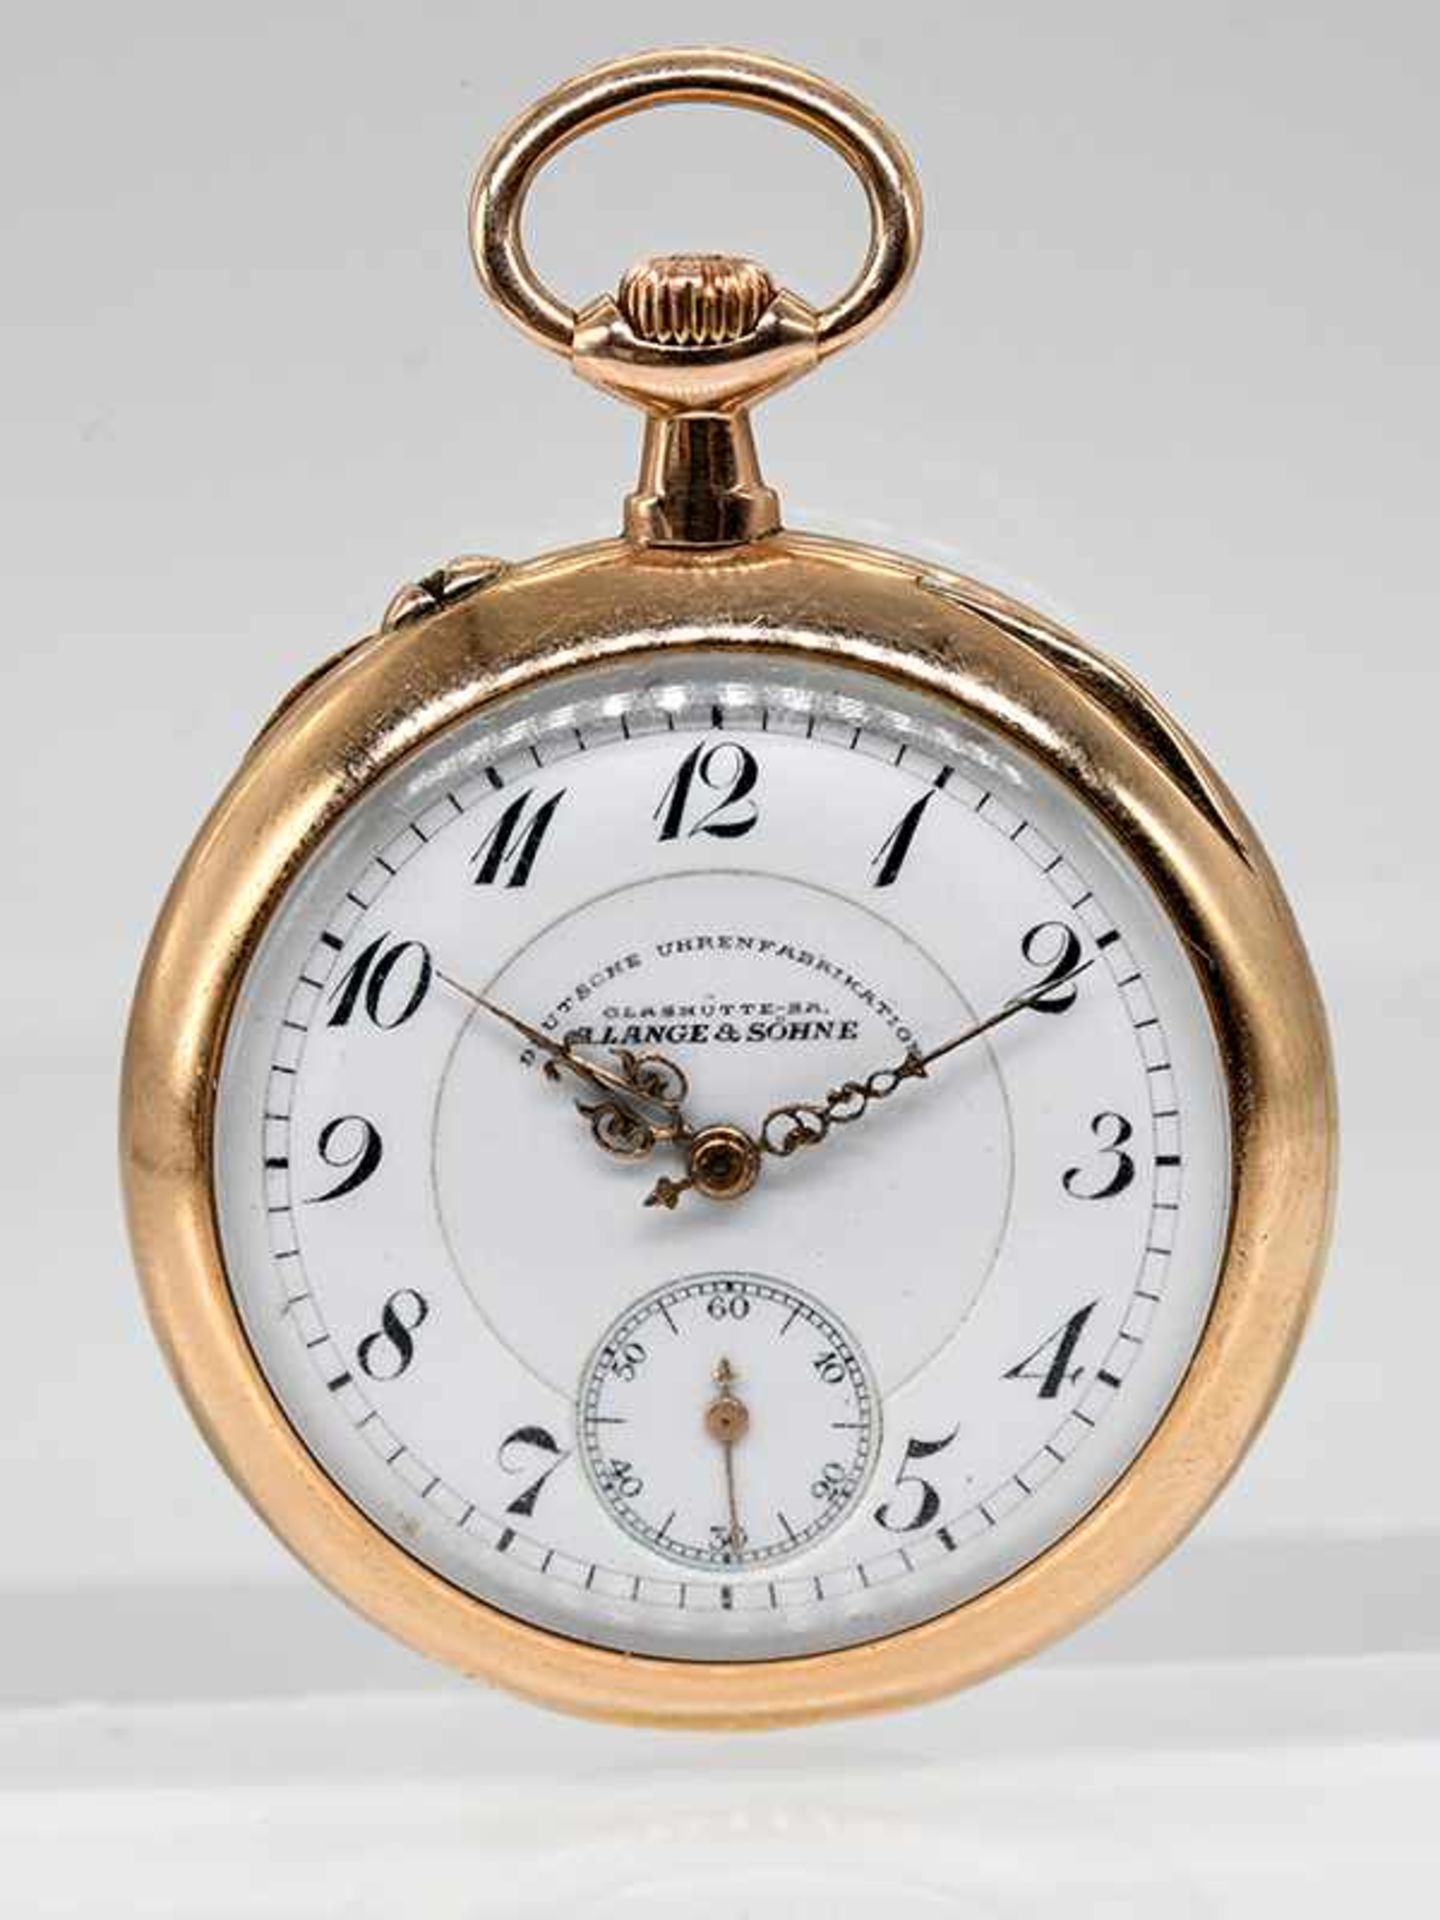 Goldene Taschenuhr, Deutsche Uhrenfabrikation, Glashütte- SA, A. Lange und Söhne, um 1900. Goldene